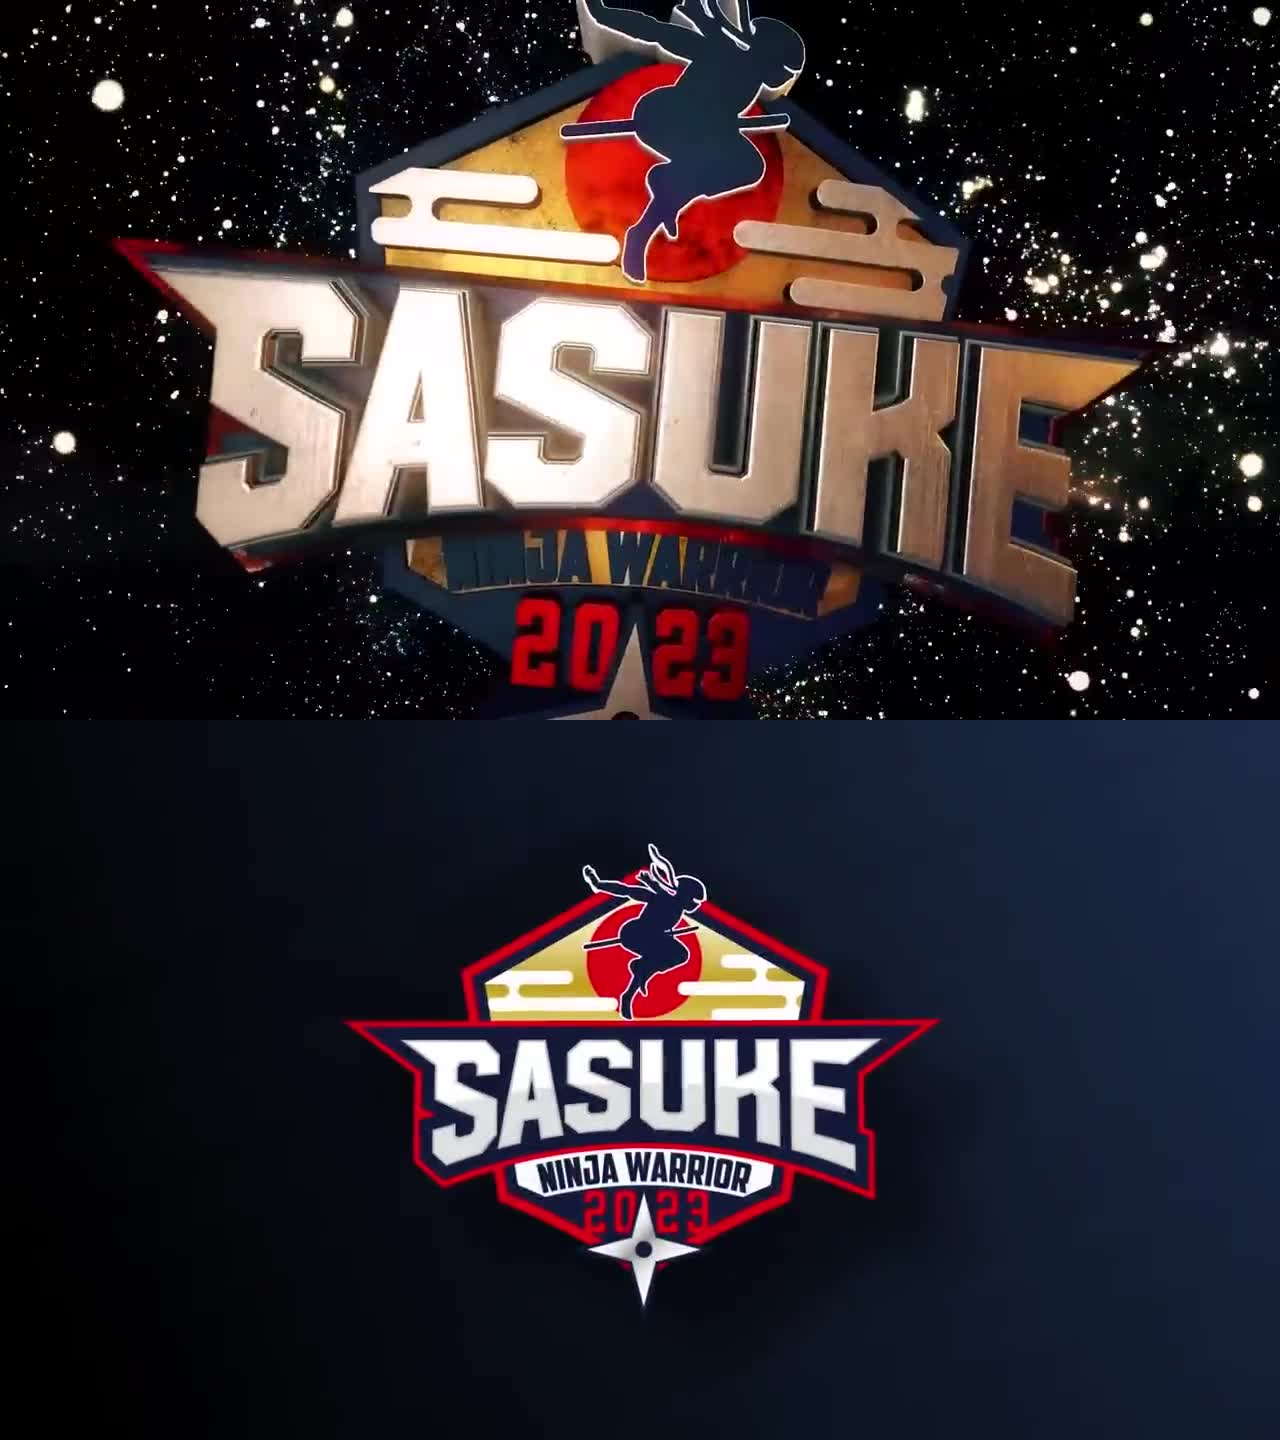 SASUKE 41 | Sasukepedia Wiki | Fandom